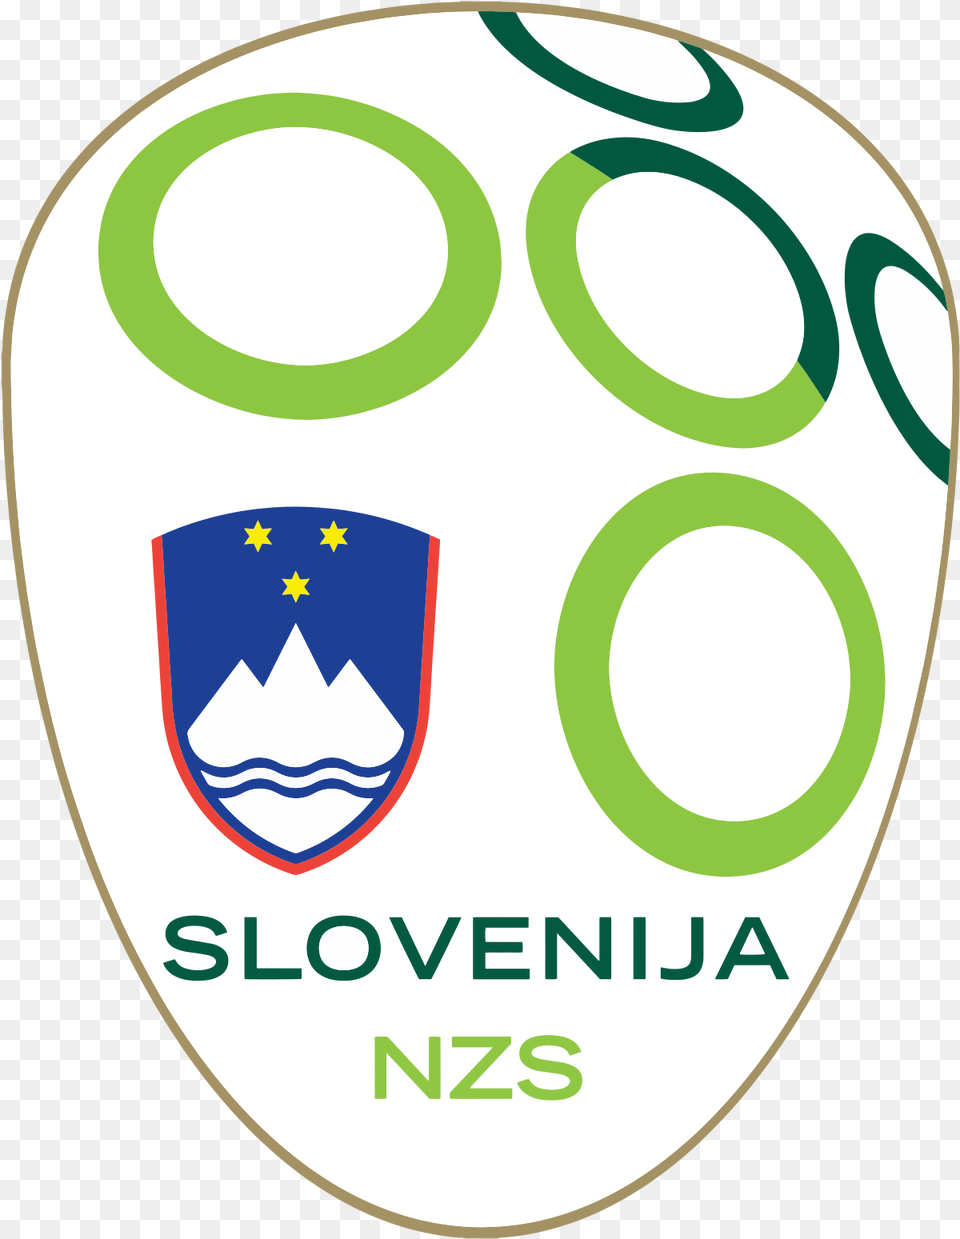 Slovenia National Football Team Reserva Ecolgica Costanera Sur, Logo, Disk Free Transparent Png